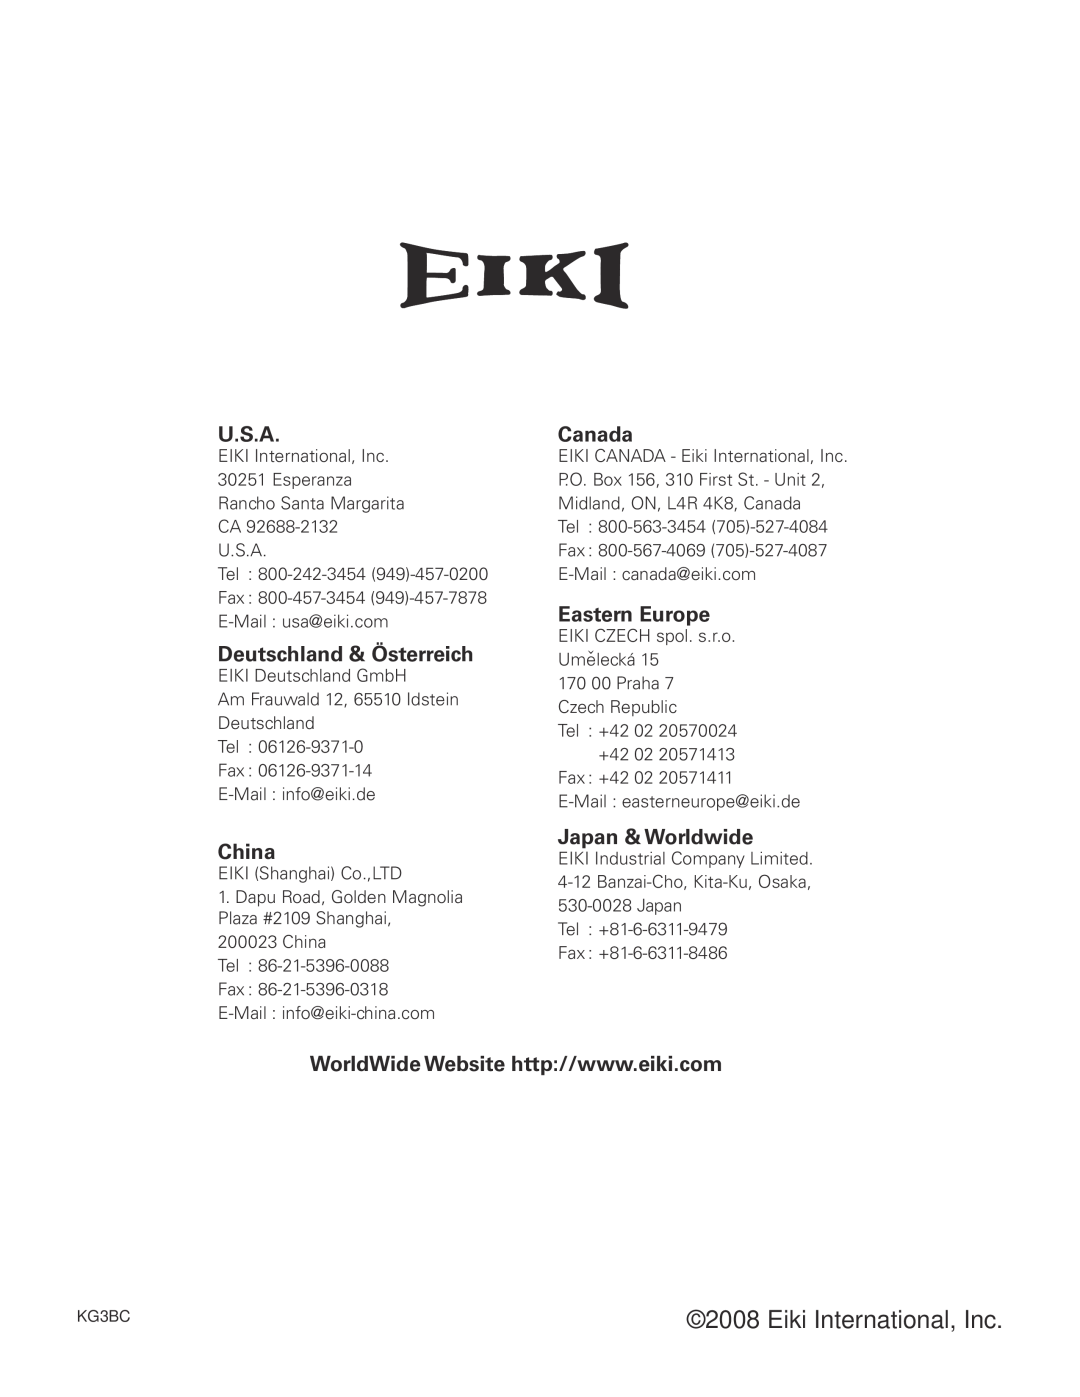 Eiki LC-XB42 U.S.A, Deutschland & Österreich, China, Canada, Eastern Europe, Japan & Worldwide, Eiki International, Inc 